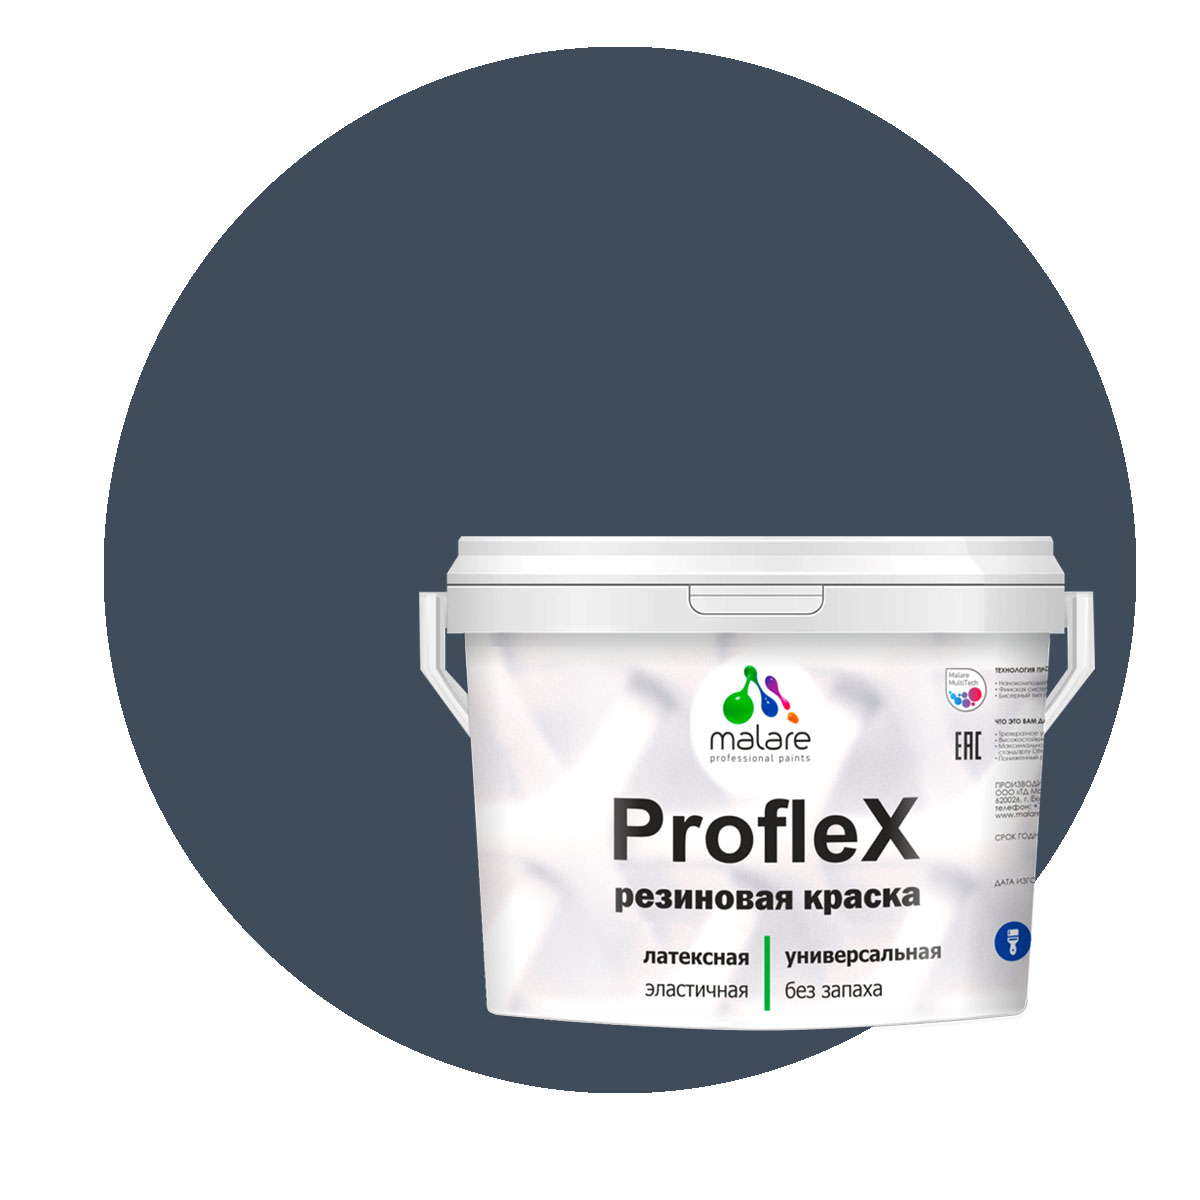 Краска Malare ProfleX для фасадов, интерьера, мебели, гранитный, 10 кг. щелочной очиститель фасадов зданий plex